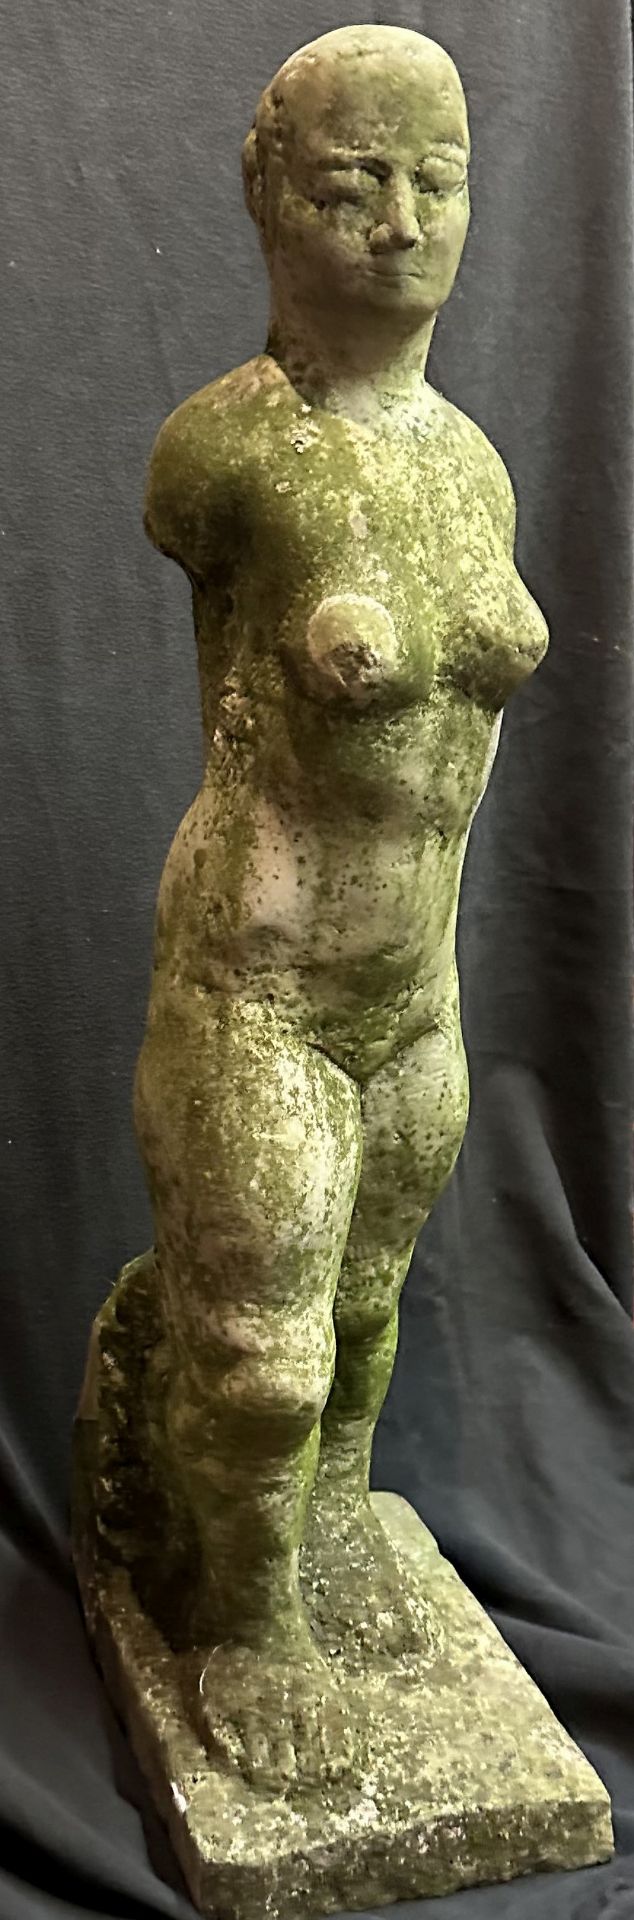 Weibliche Figur, Stein, Alter unbekannt, H 80 cm - Bild 2 aus 4